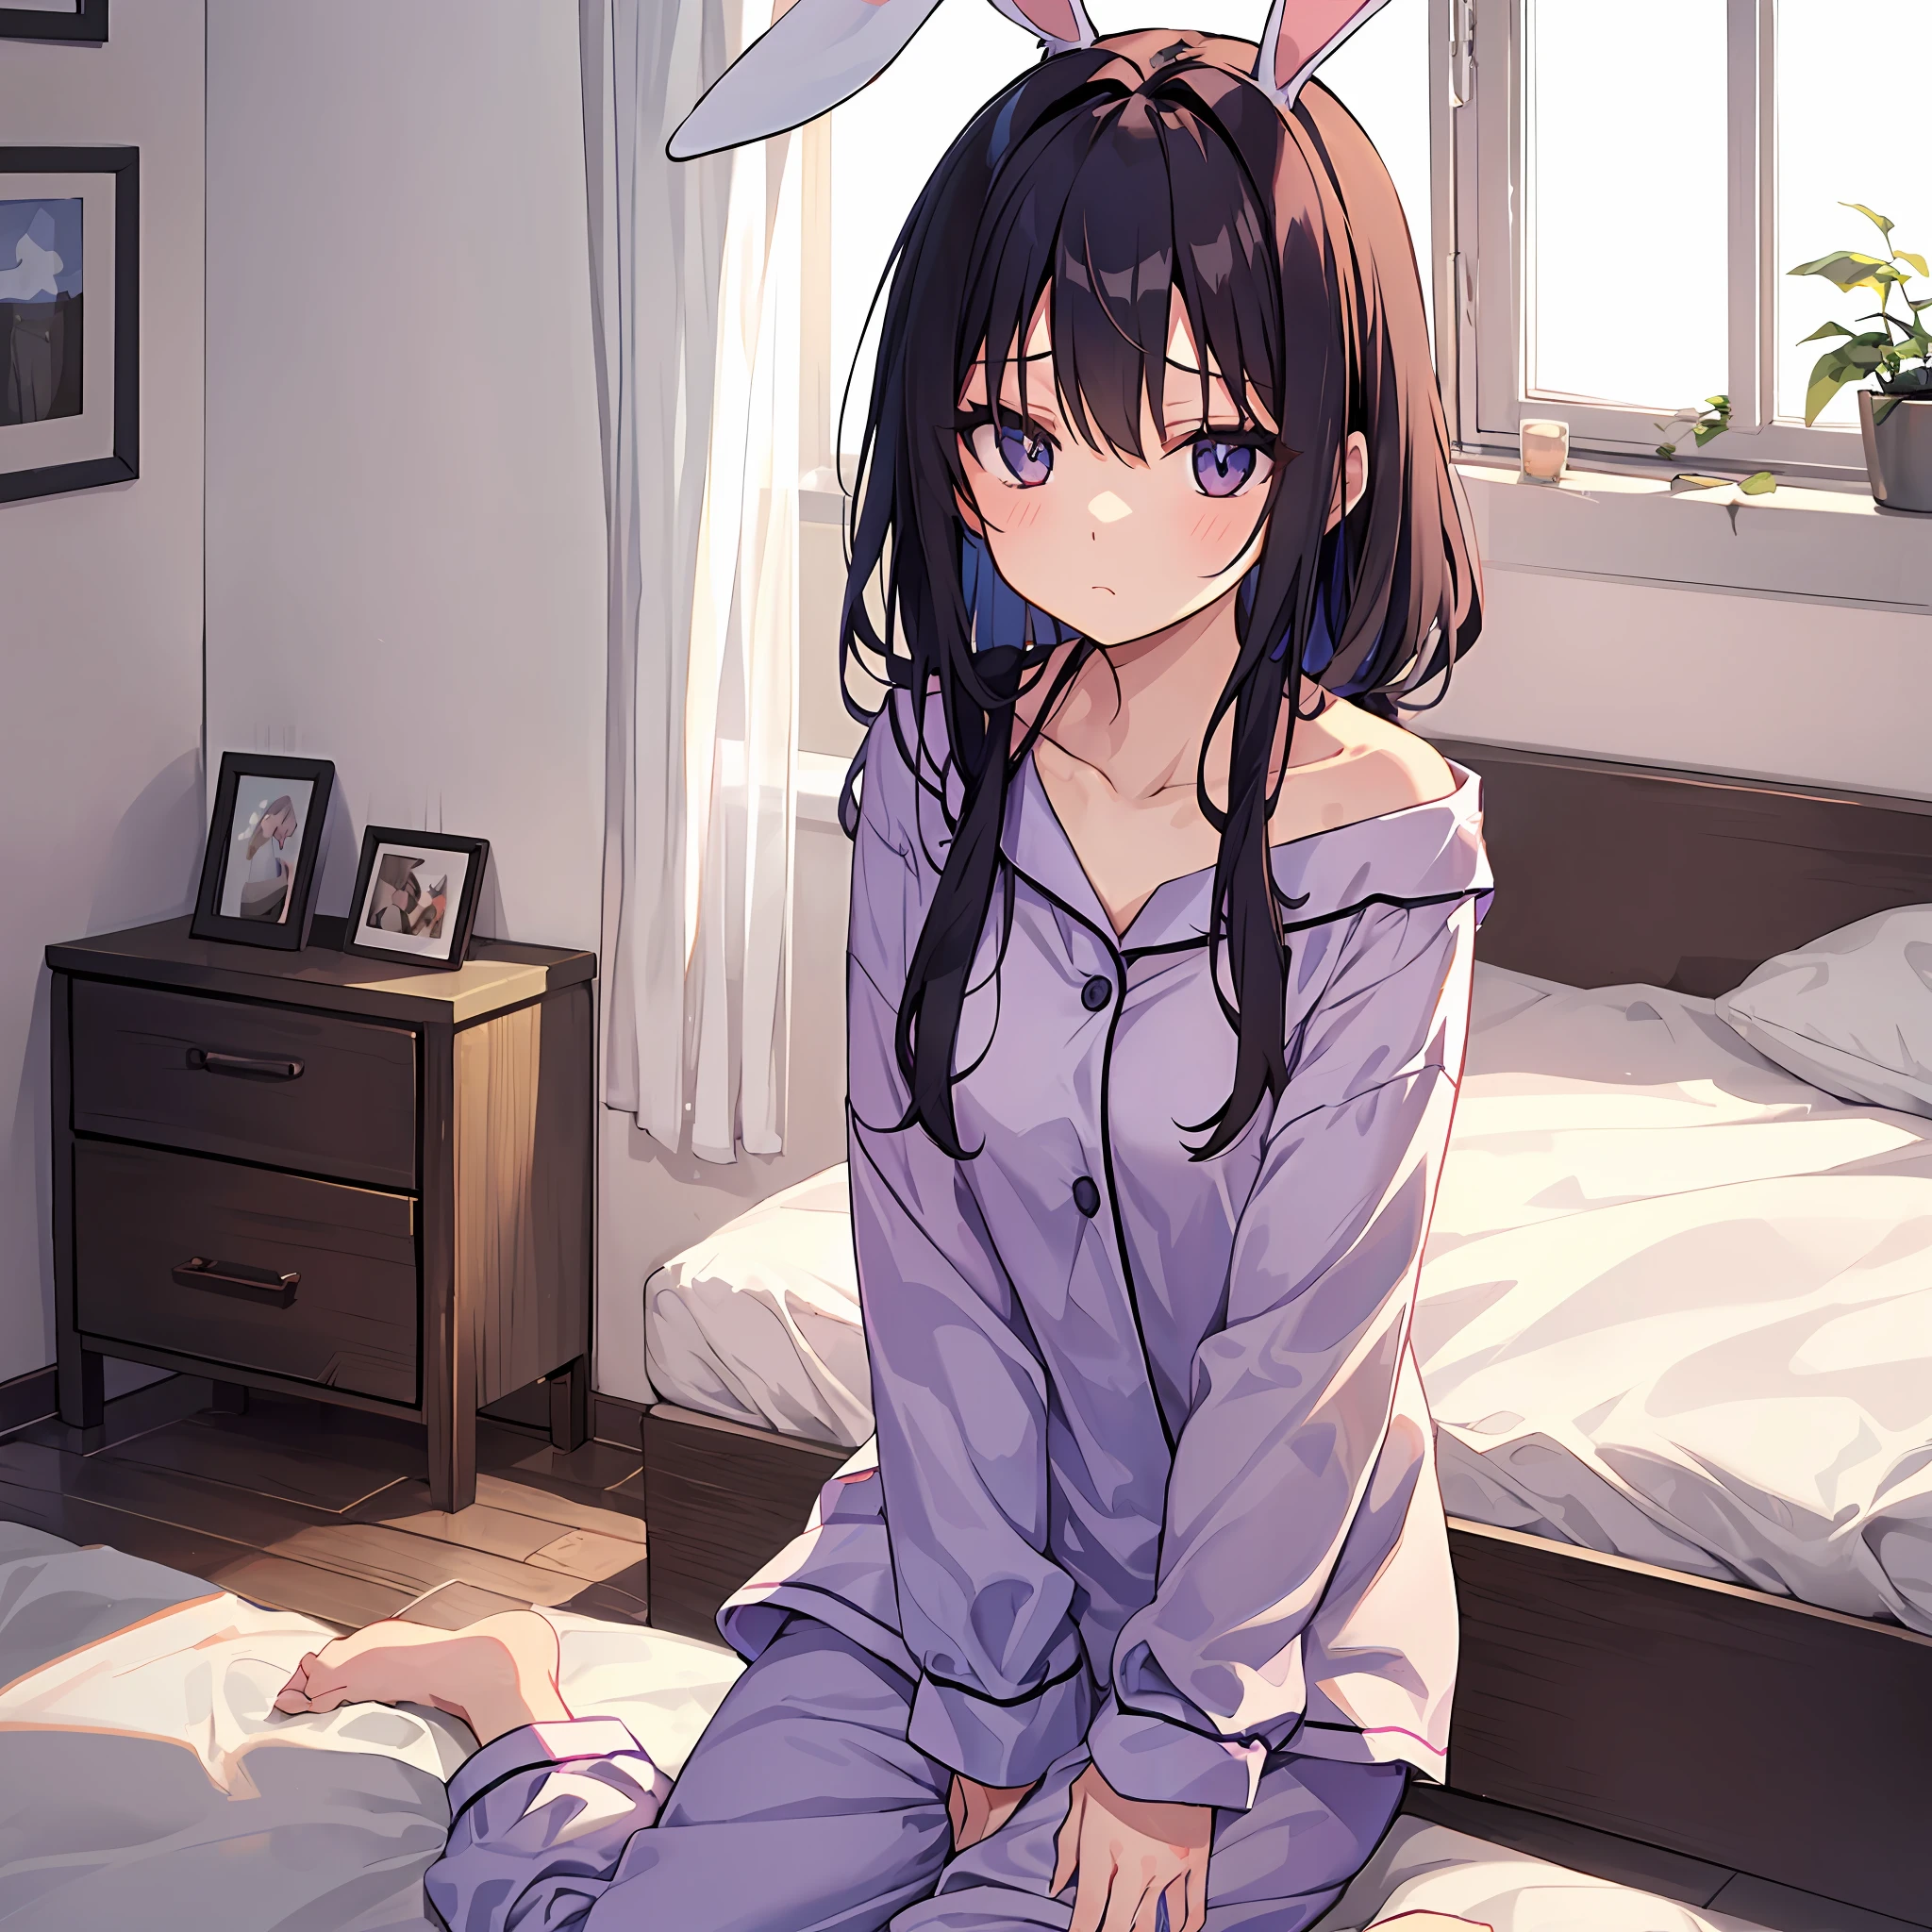 Garota com orelhas de coelho　dentro do quarto　Pijamas　Cara de sono　Parece sonolento